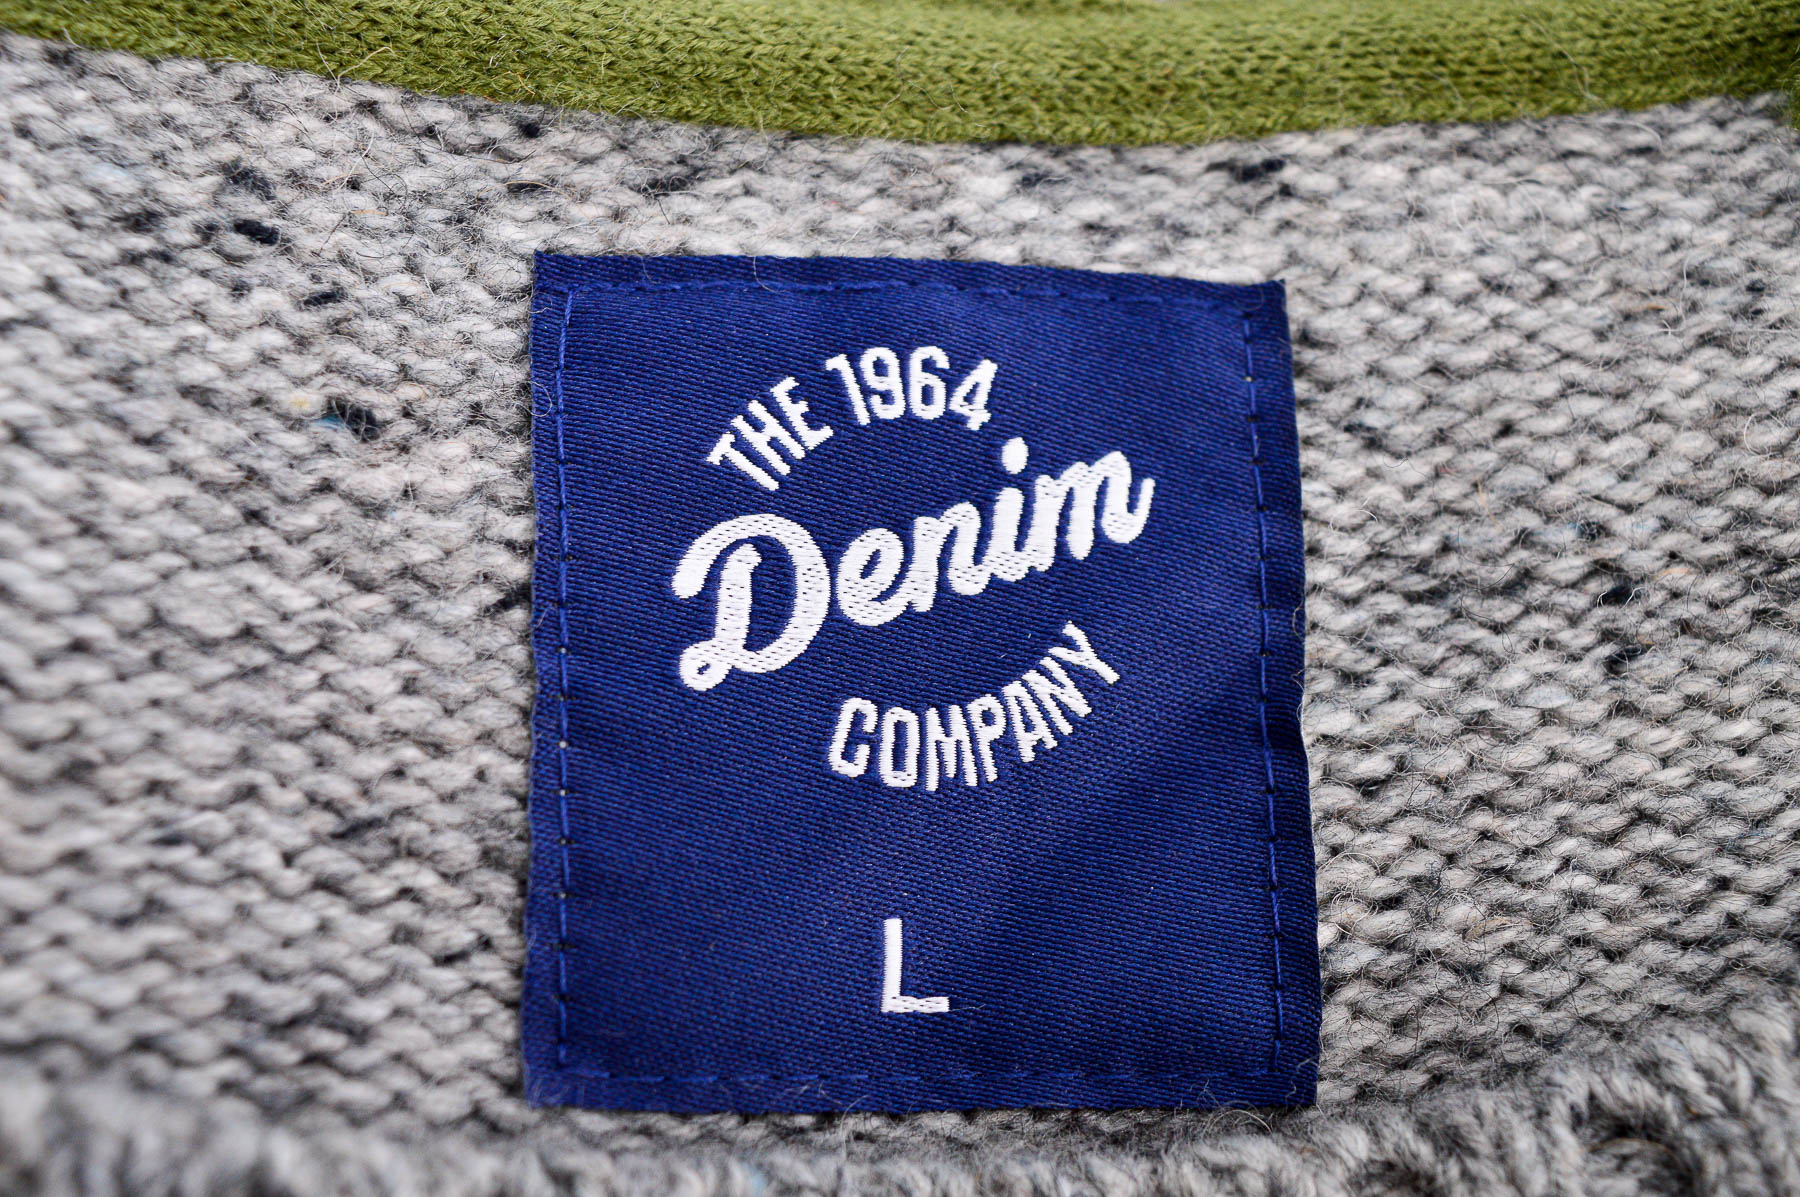 Sweter męski - THE 1964 Denim COMPANY - 2